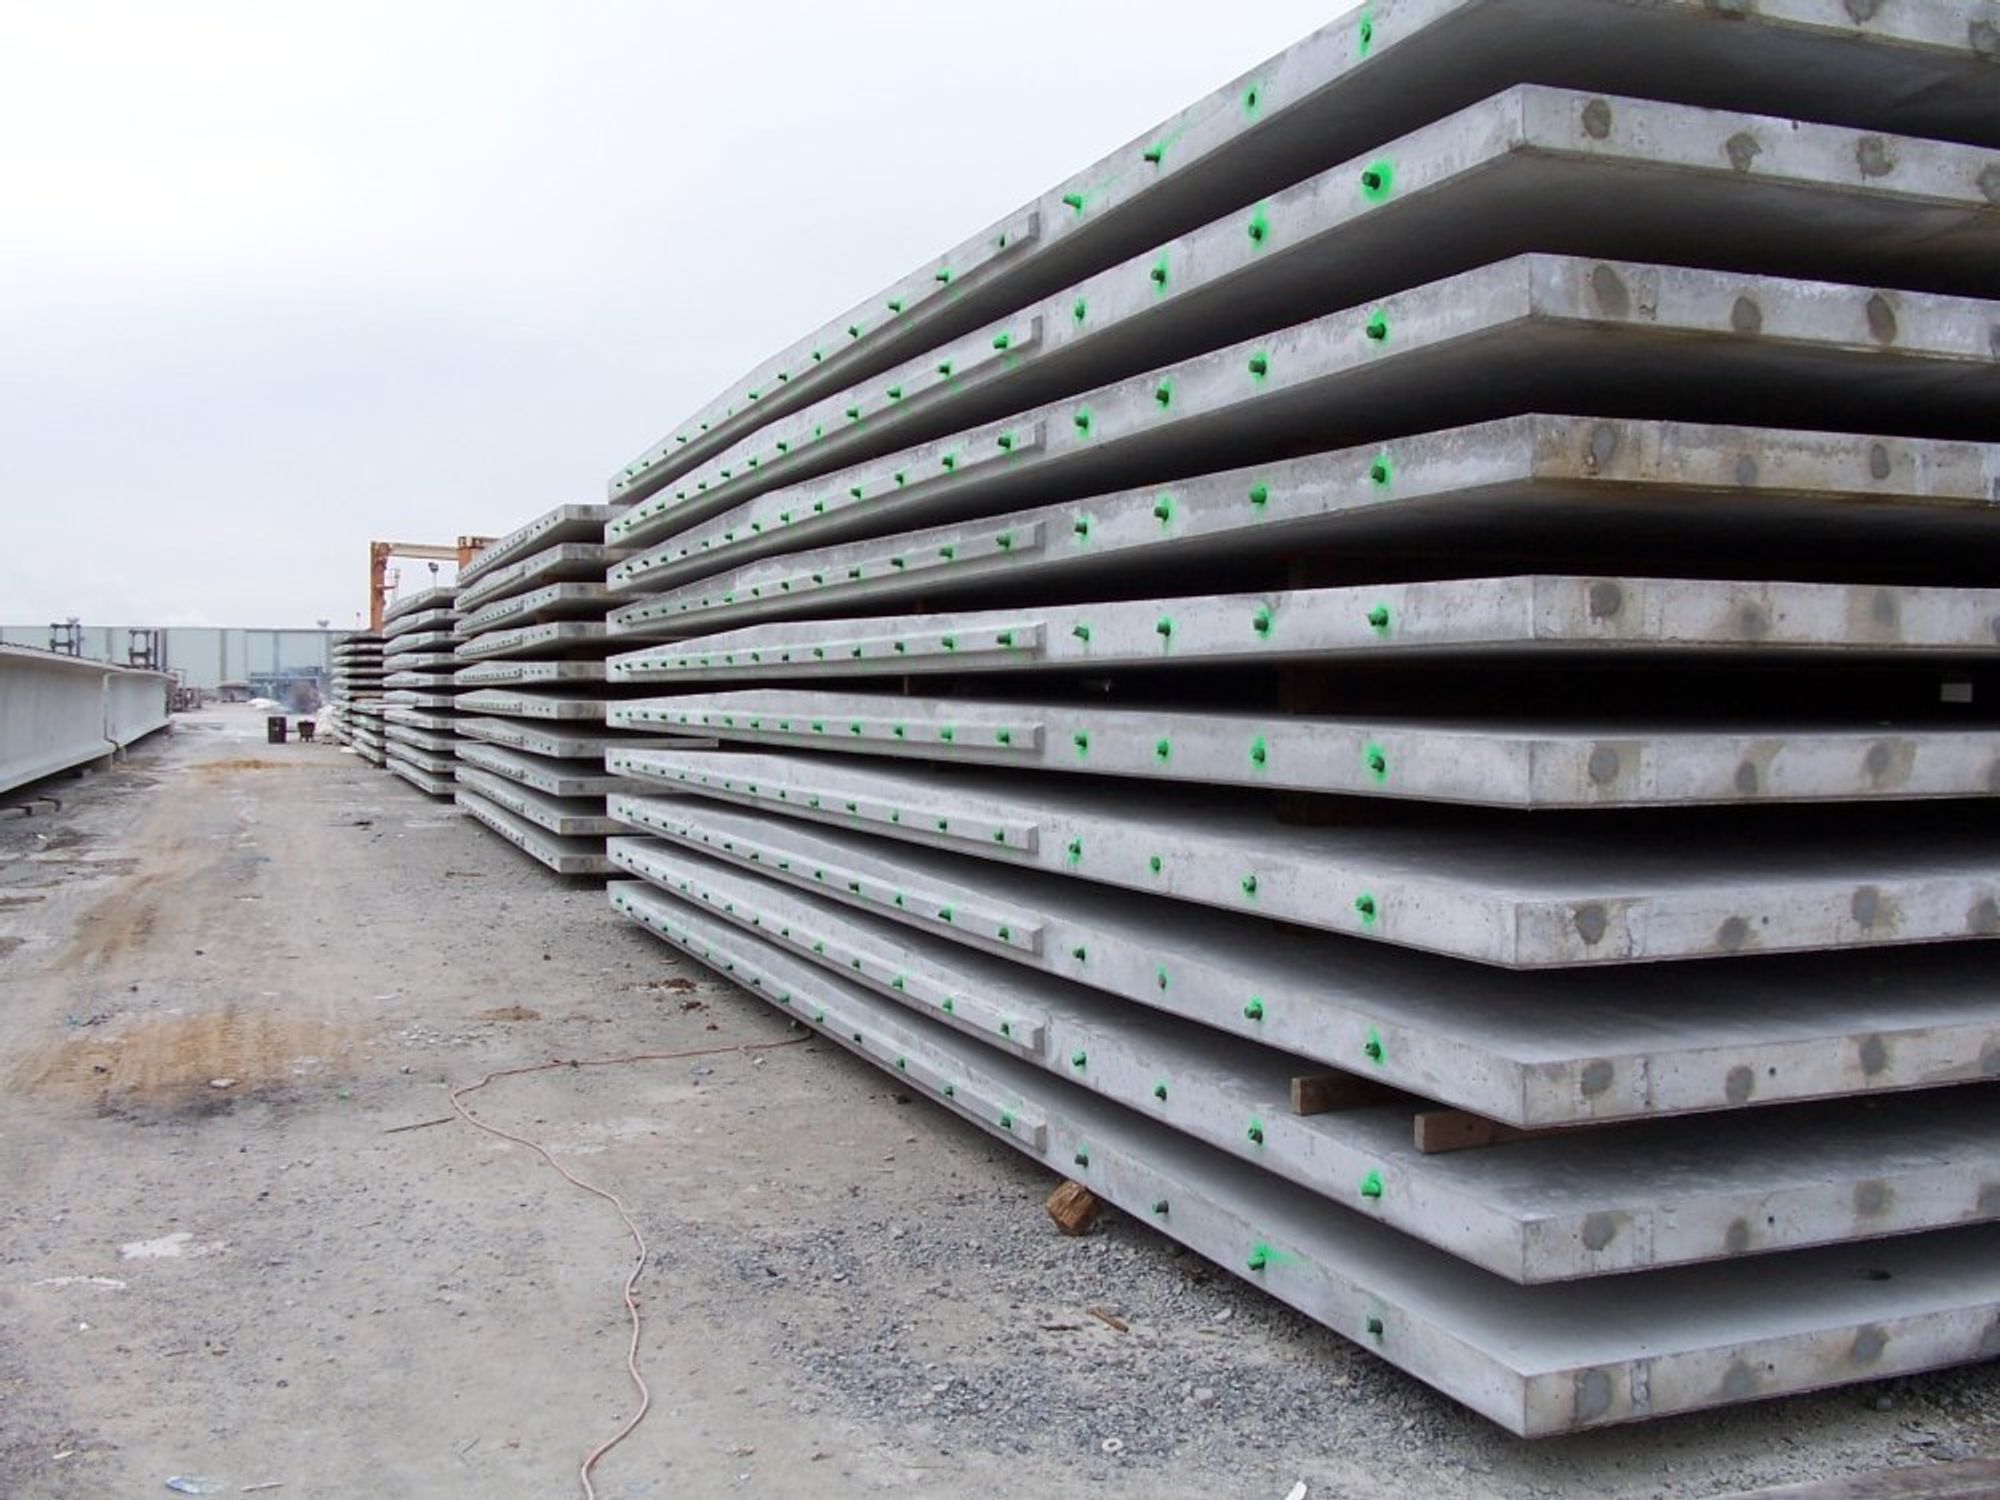 I USA har de tatt i bruk en teknikk med å produsere betongdekker på veg ved bruk av prefabrikkerte betongplater (Precast Concrete Pavement Technology).